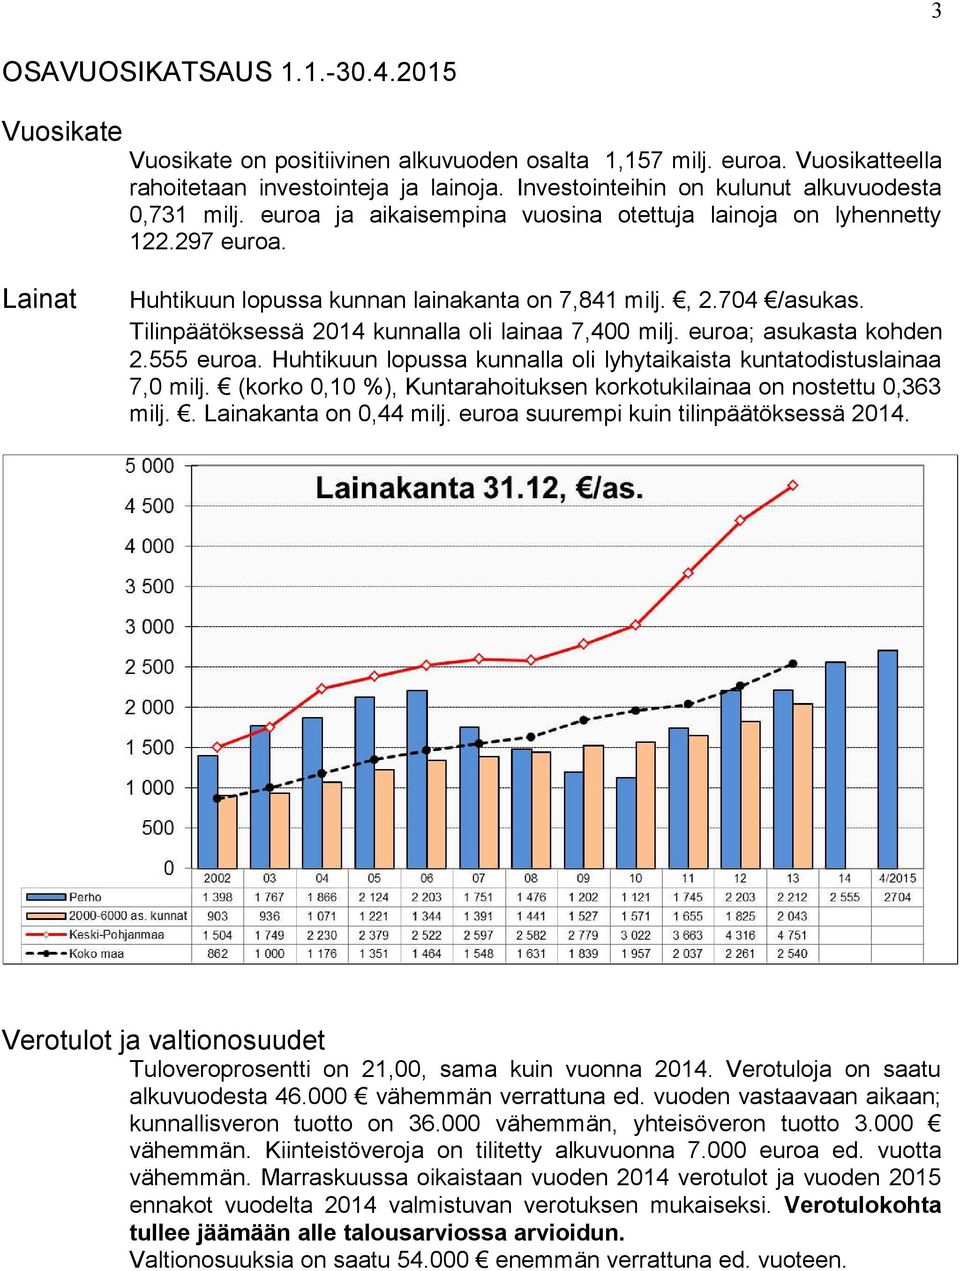 704 /asukas. Tilinpäätöksessä 2014 kunnalla oli lainaa 7,400 milj. euroa; asukasta kohden 2.555 euroa. Huhtikuun lopussa kunnalla oli lyhytaikaista kuntatodistuslainaa 7,0 milj.